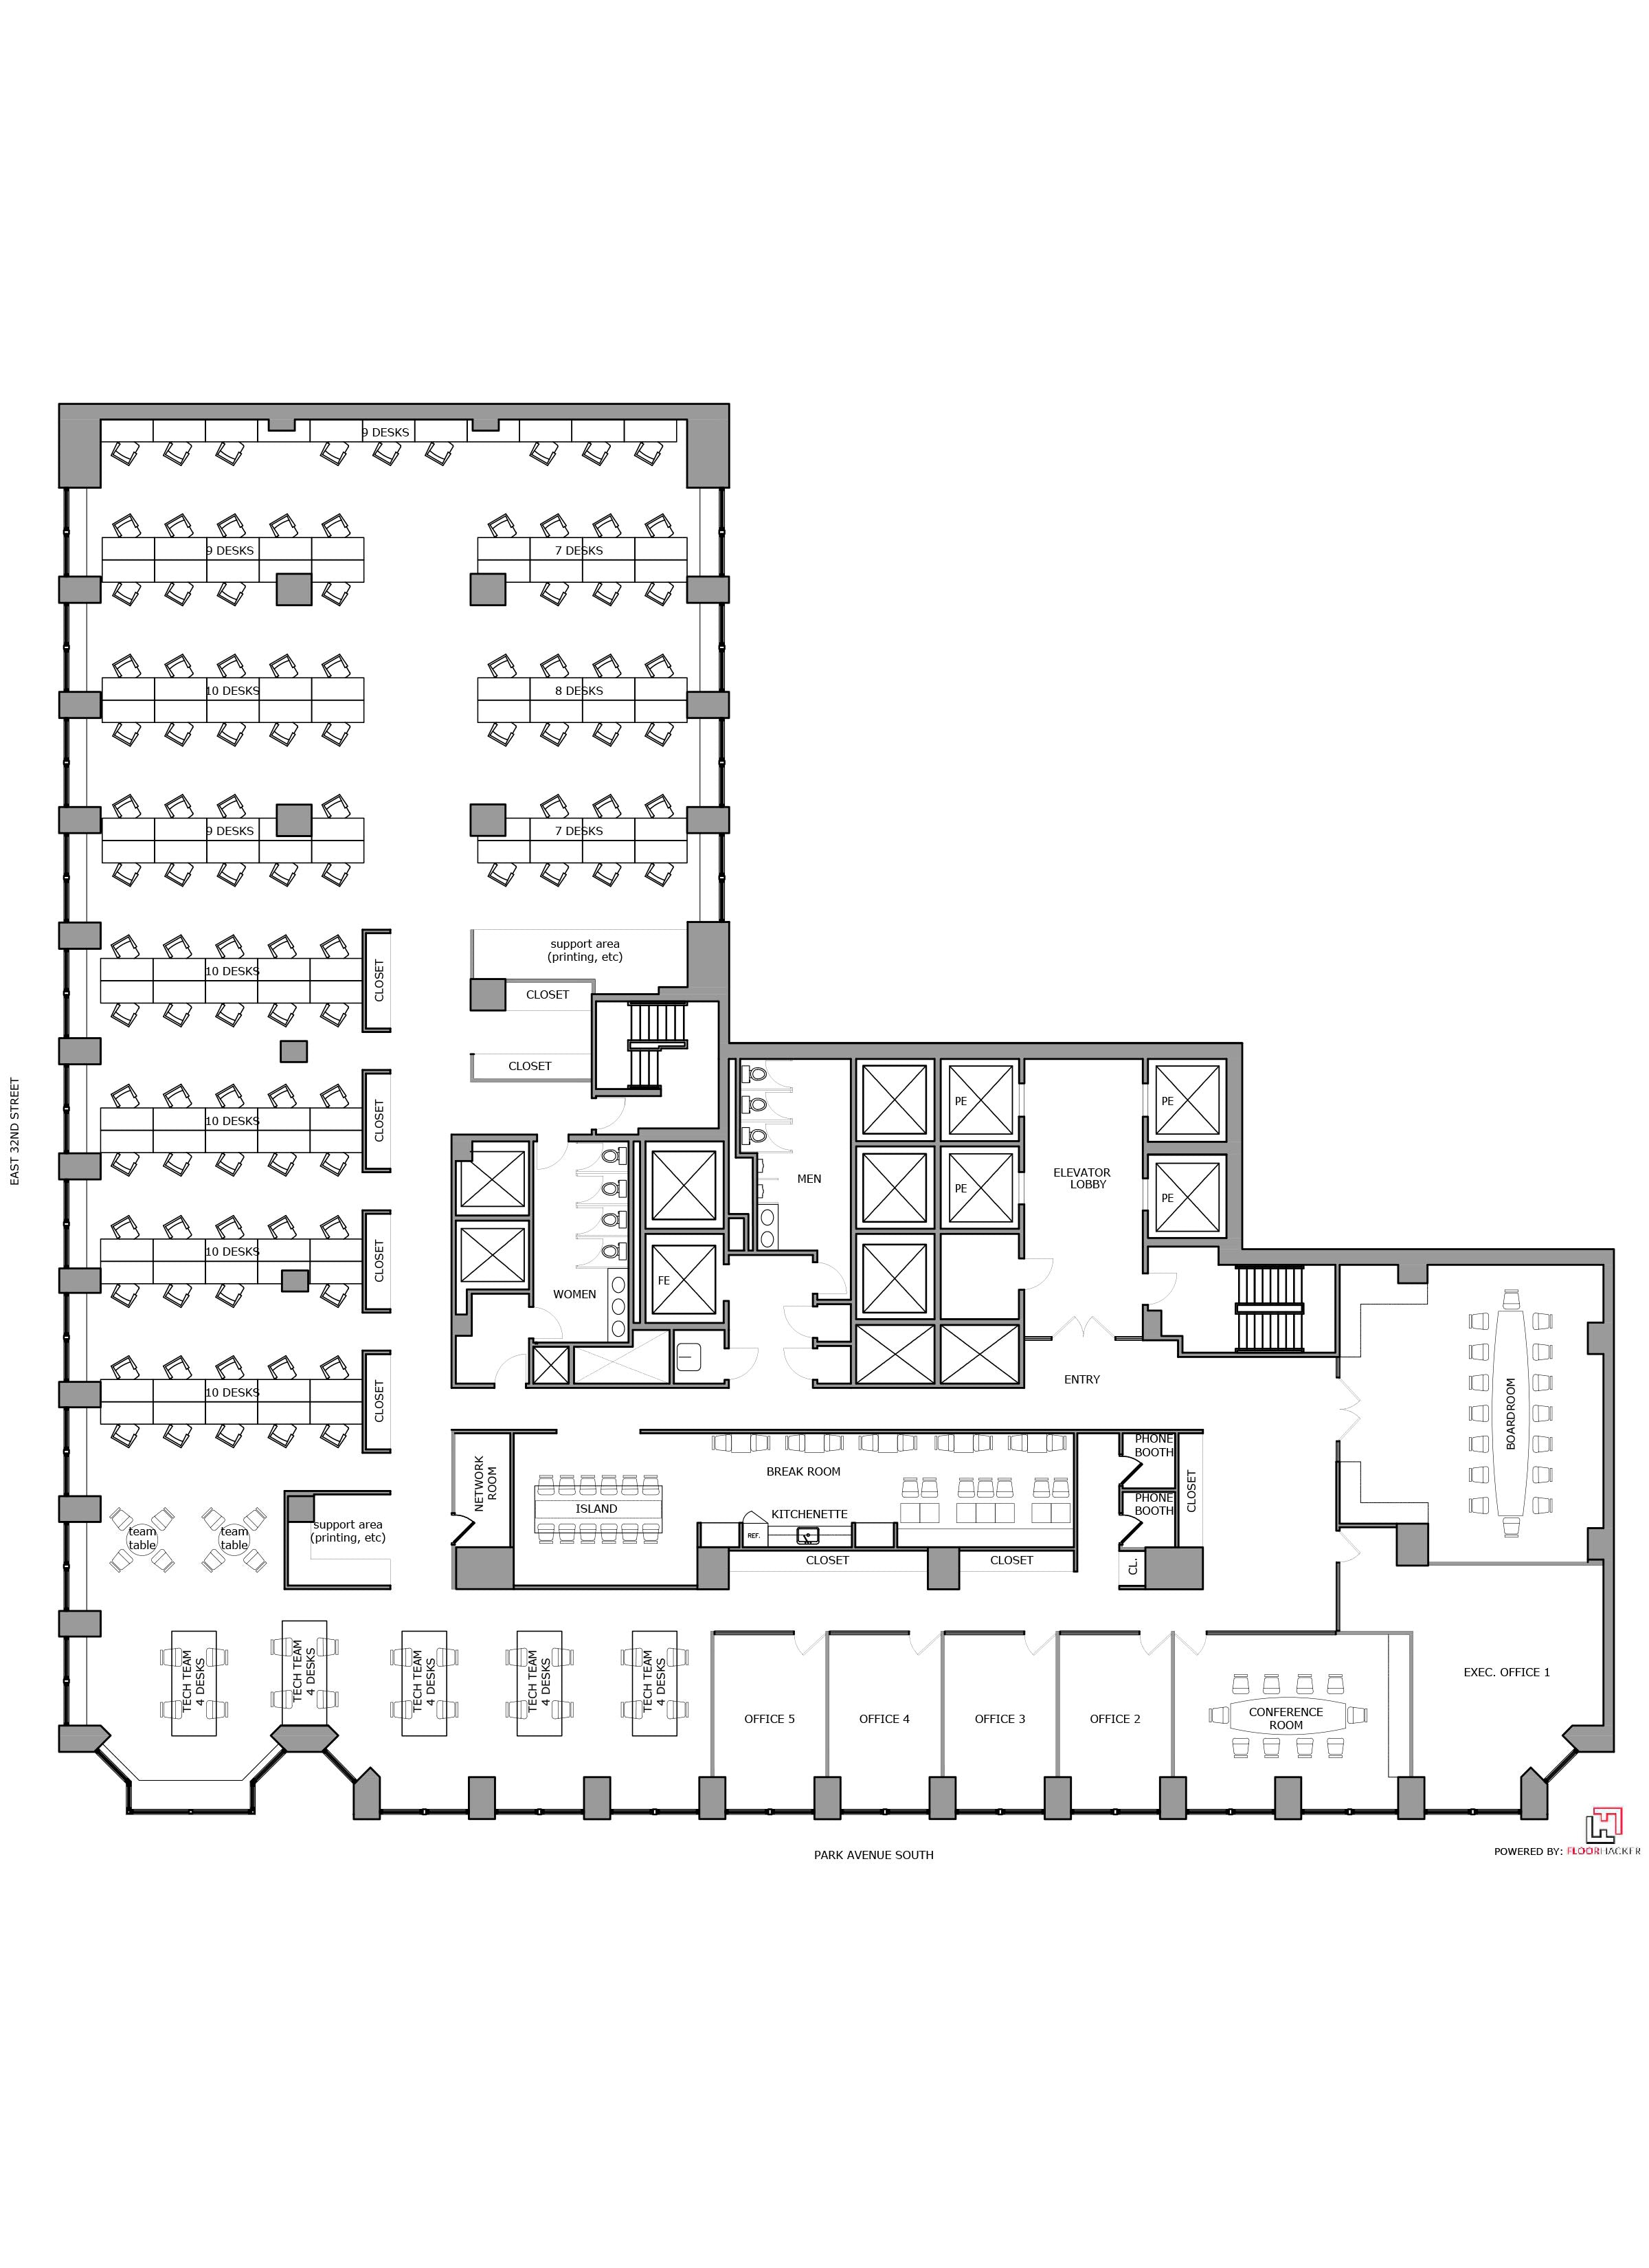 Floor Plan Design - Office Test Fit_Park Avenue South PAS, NYC